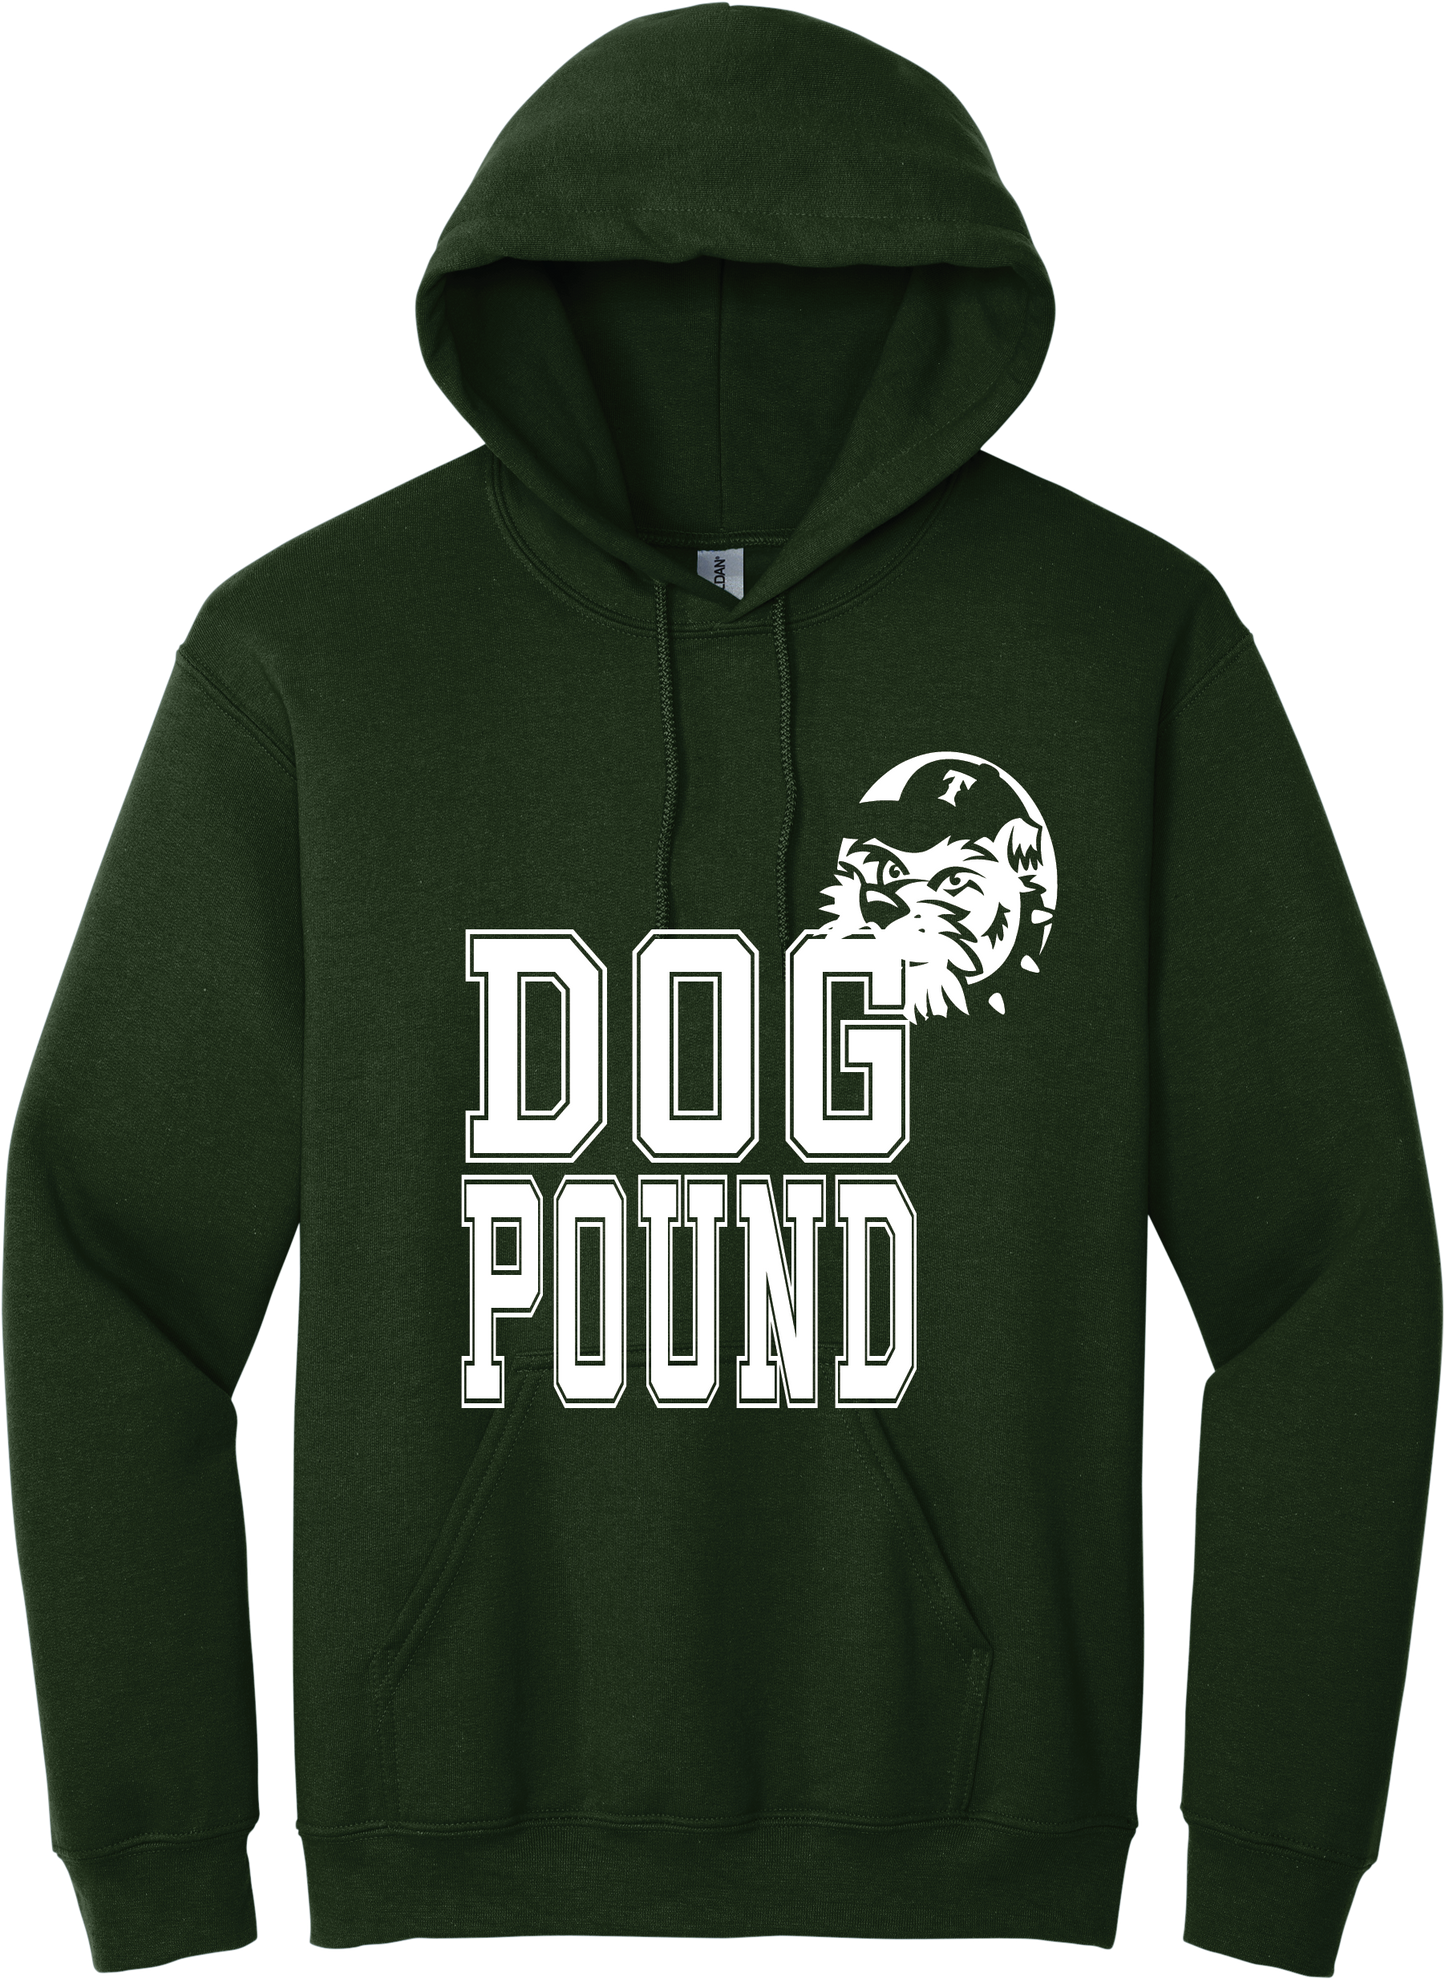 Dog Pound Hoody